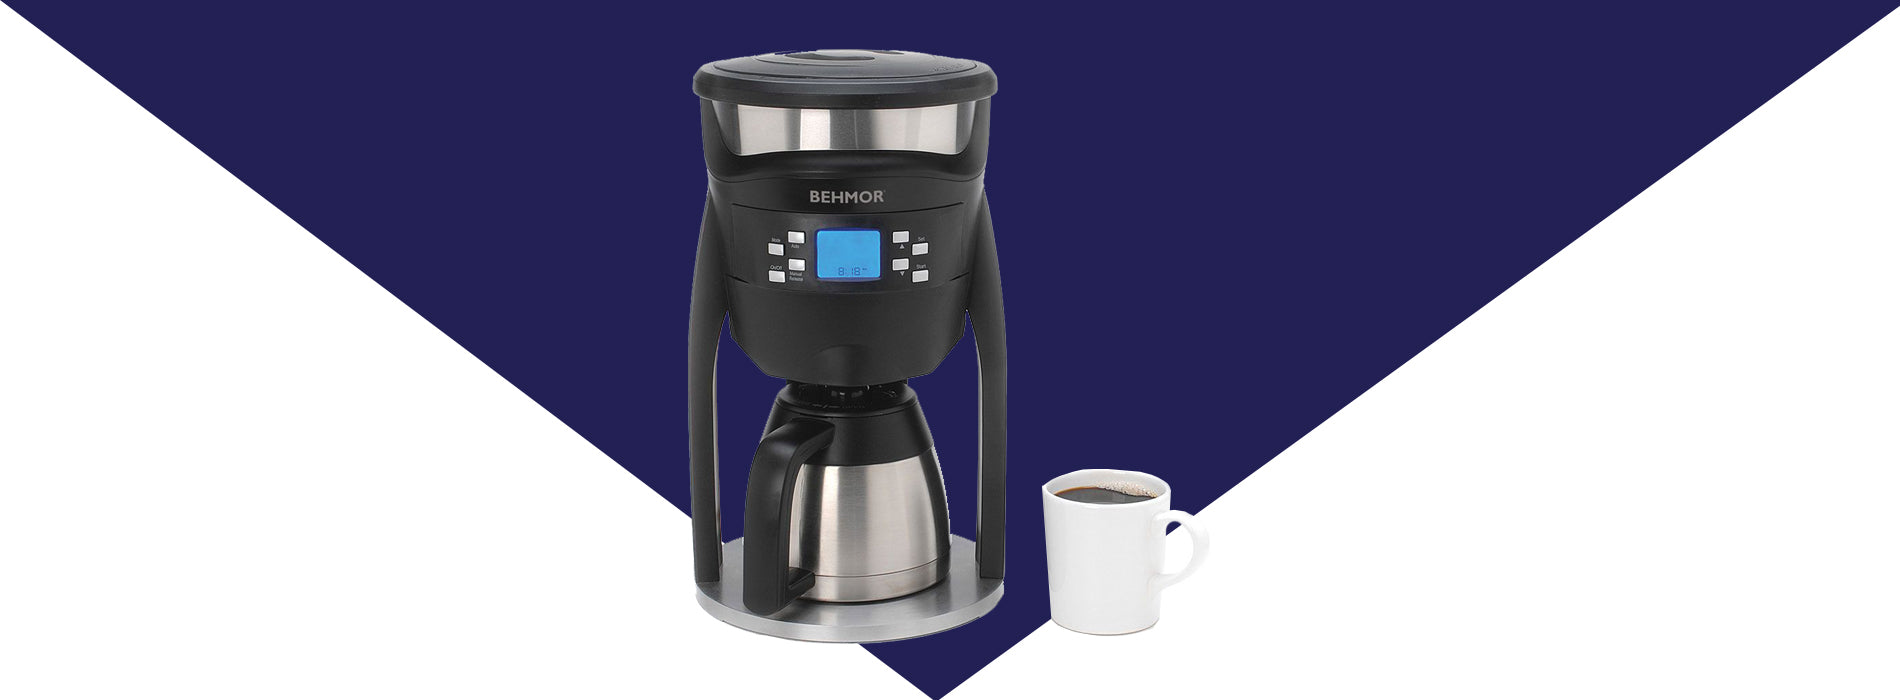  Brazen Plus 3.0 Coffee Brew System - Refurbished